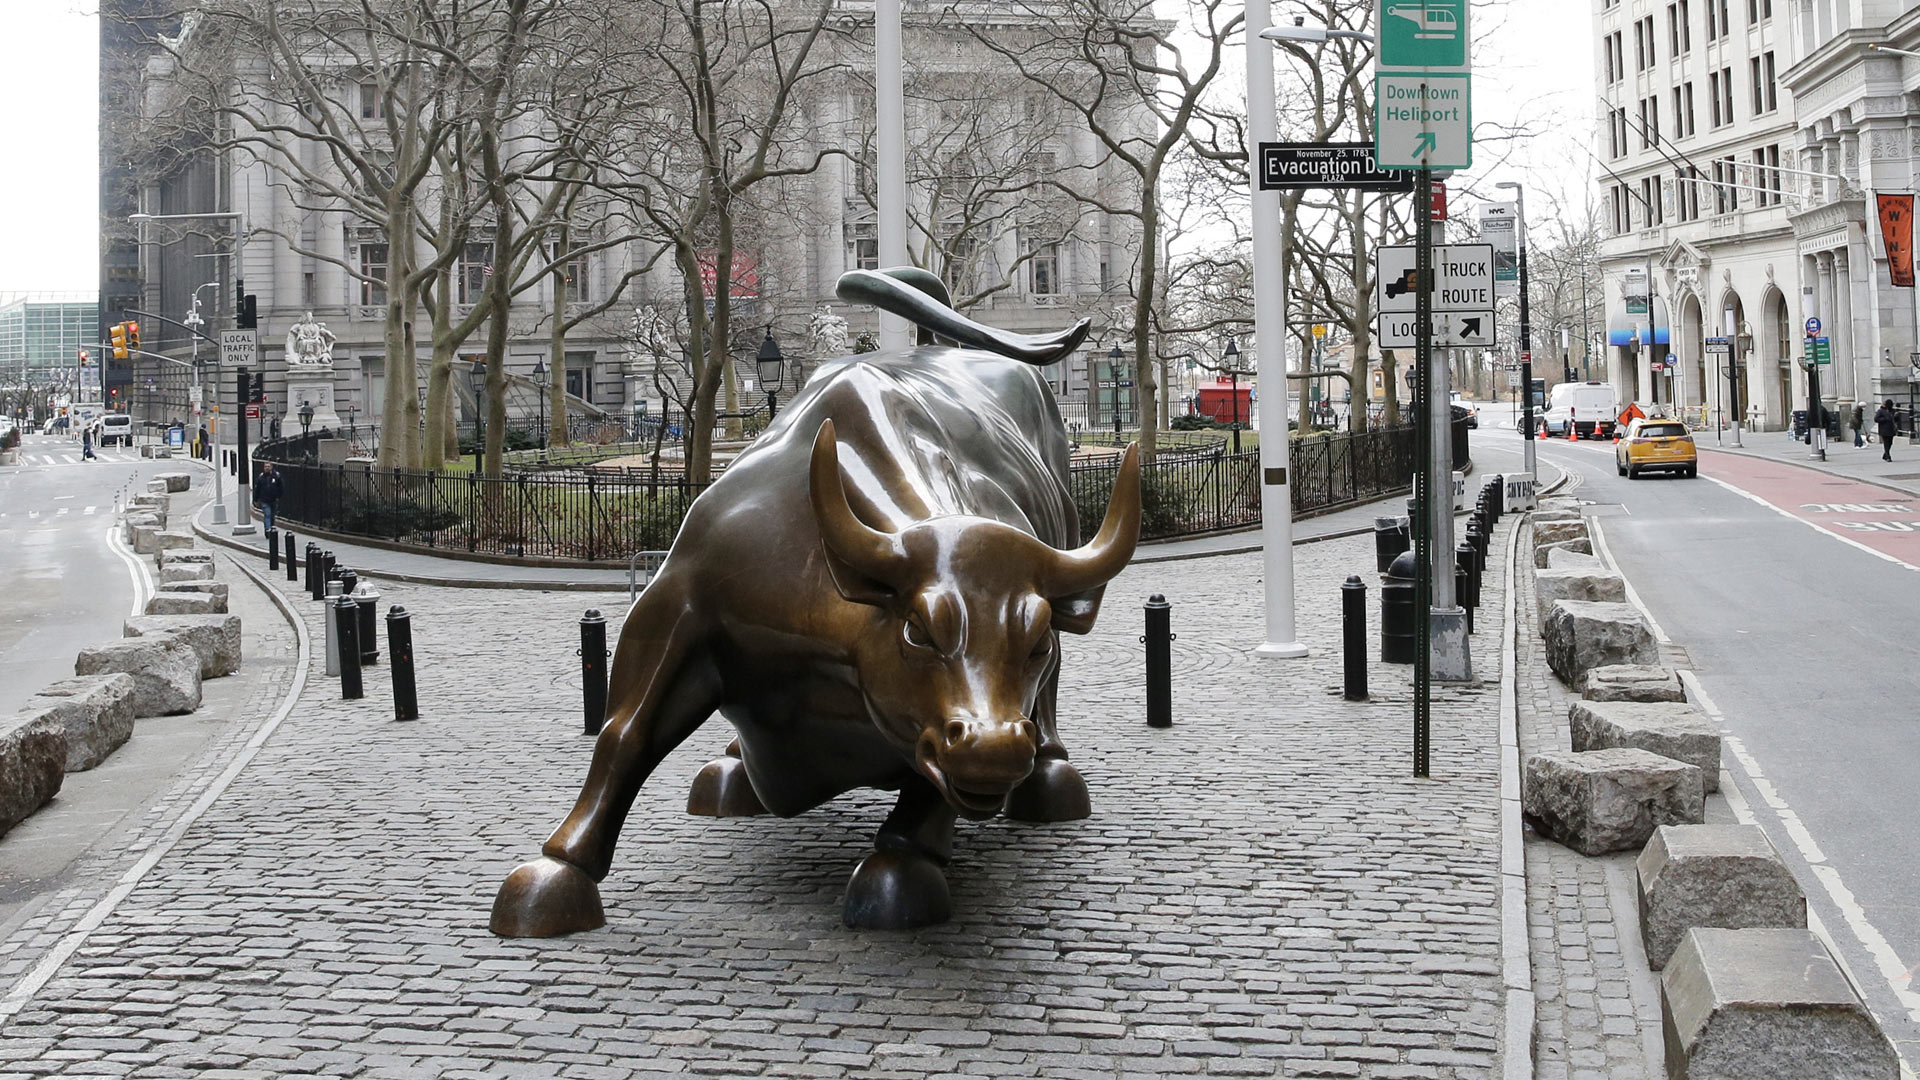 Bullenskulptur an der Wall Street in New York City | picture alliance / newscom